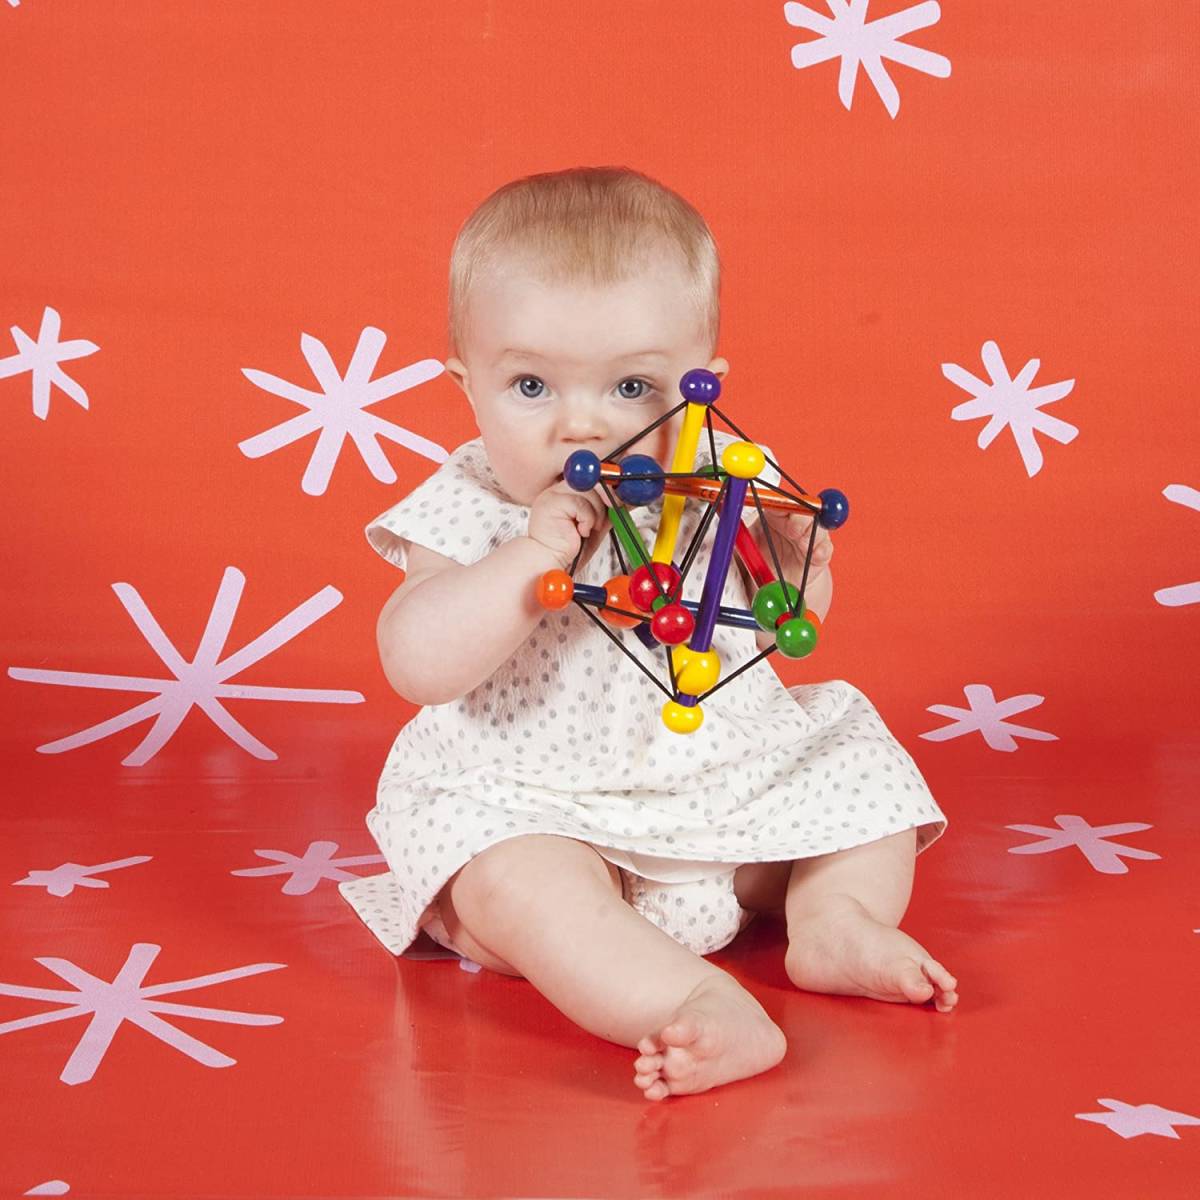  бесплатная доставка bo- фланель ndoskwish цвет великолепный из дерева игрушка BorneLund игрушка для укрепления зубов для малышей skishu параллель импортные товары развивающая игрушка 